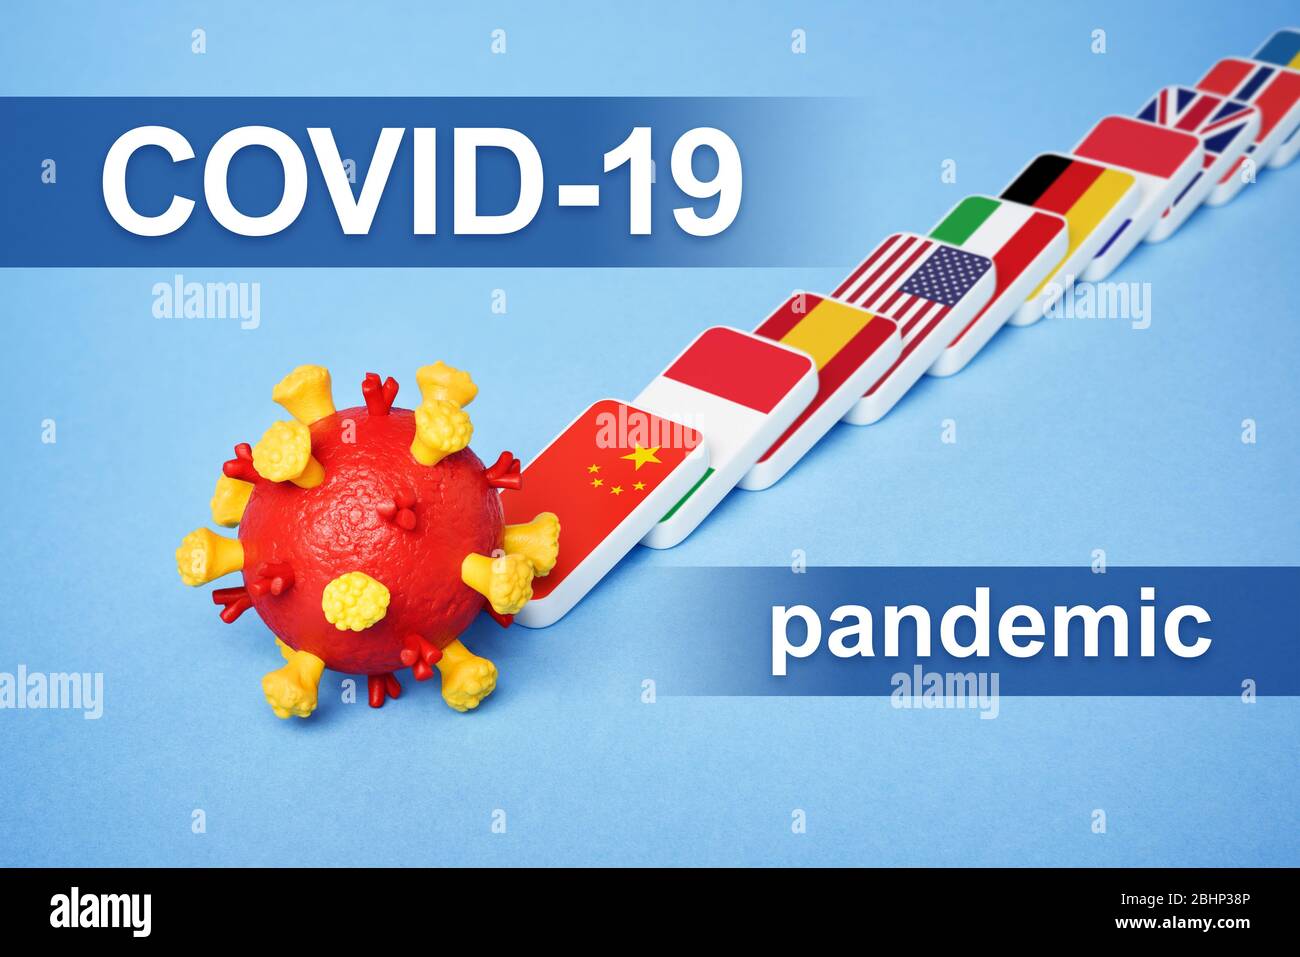 Enfermedad coronavirus COVID-19 pandemia. El efecto dominó es una reacción en cadena de la propagación del virus en el mundo. Sistema de salud sobrecargado Foto de stock